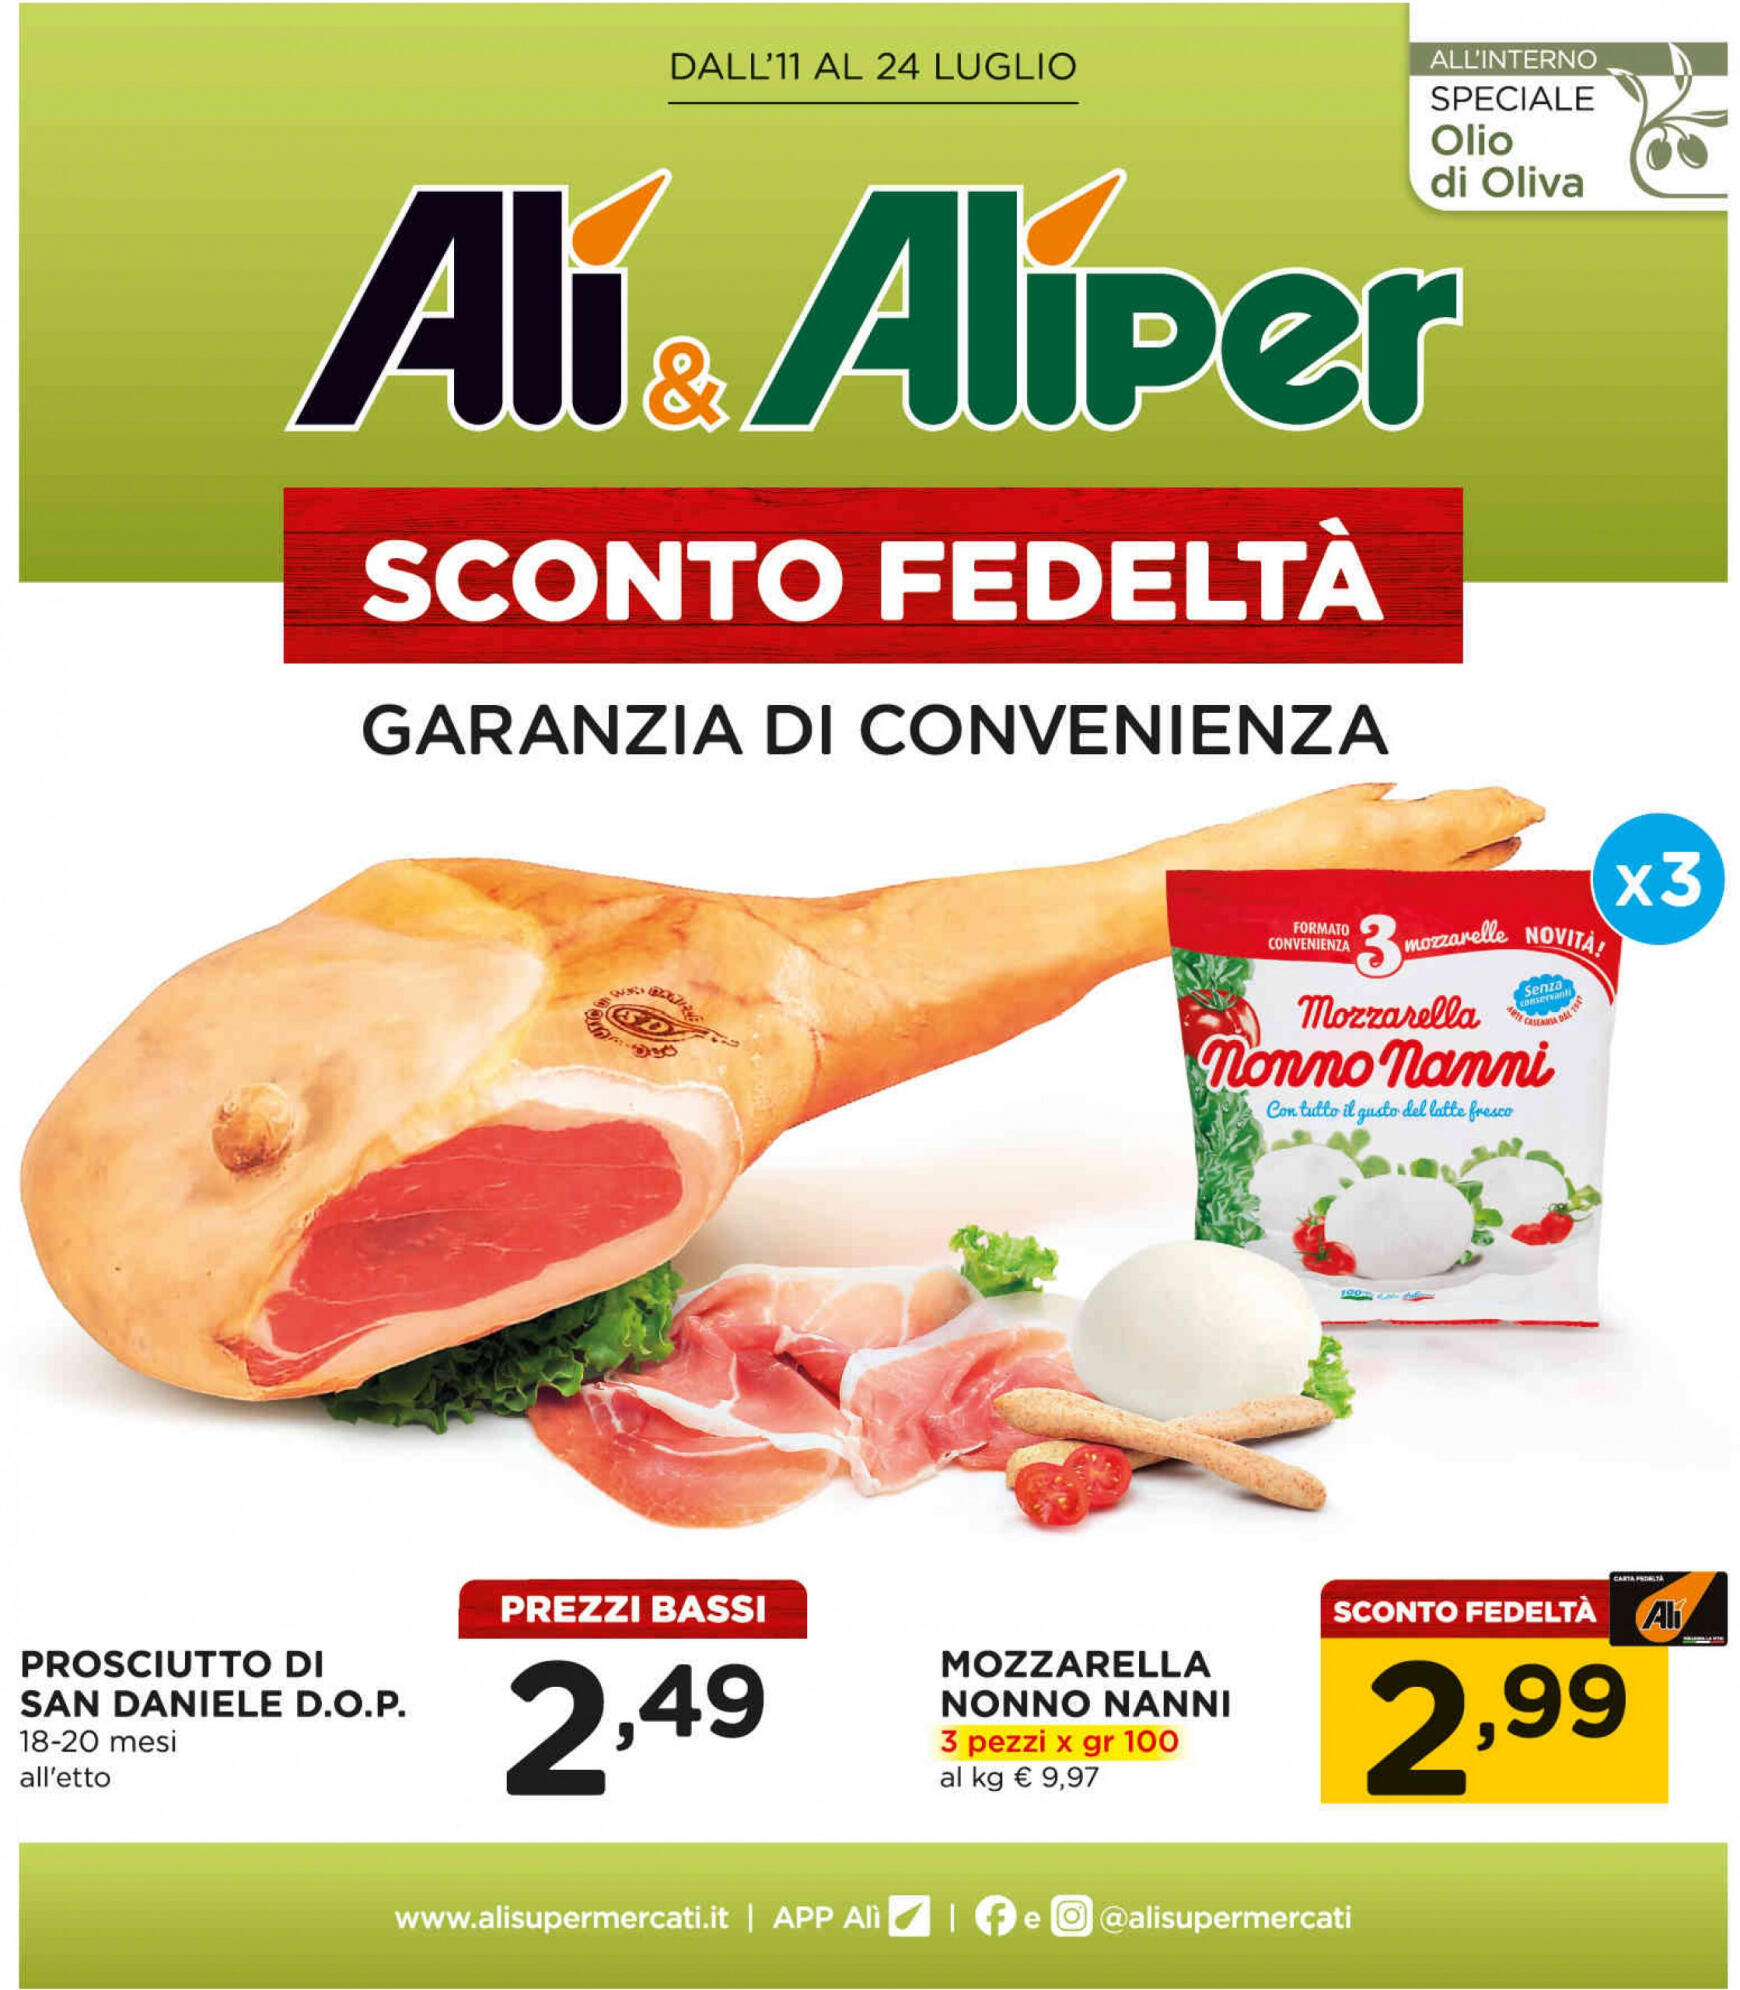 ali-aliper - Nuovo volantino Ali - Aliper - Prezzi bassi 11.07. - 24.07.